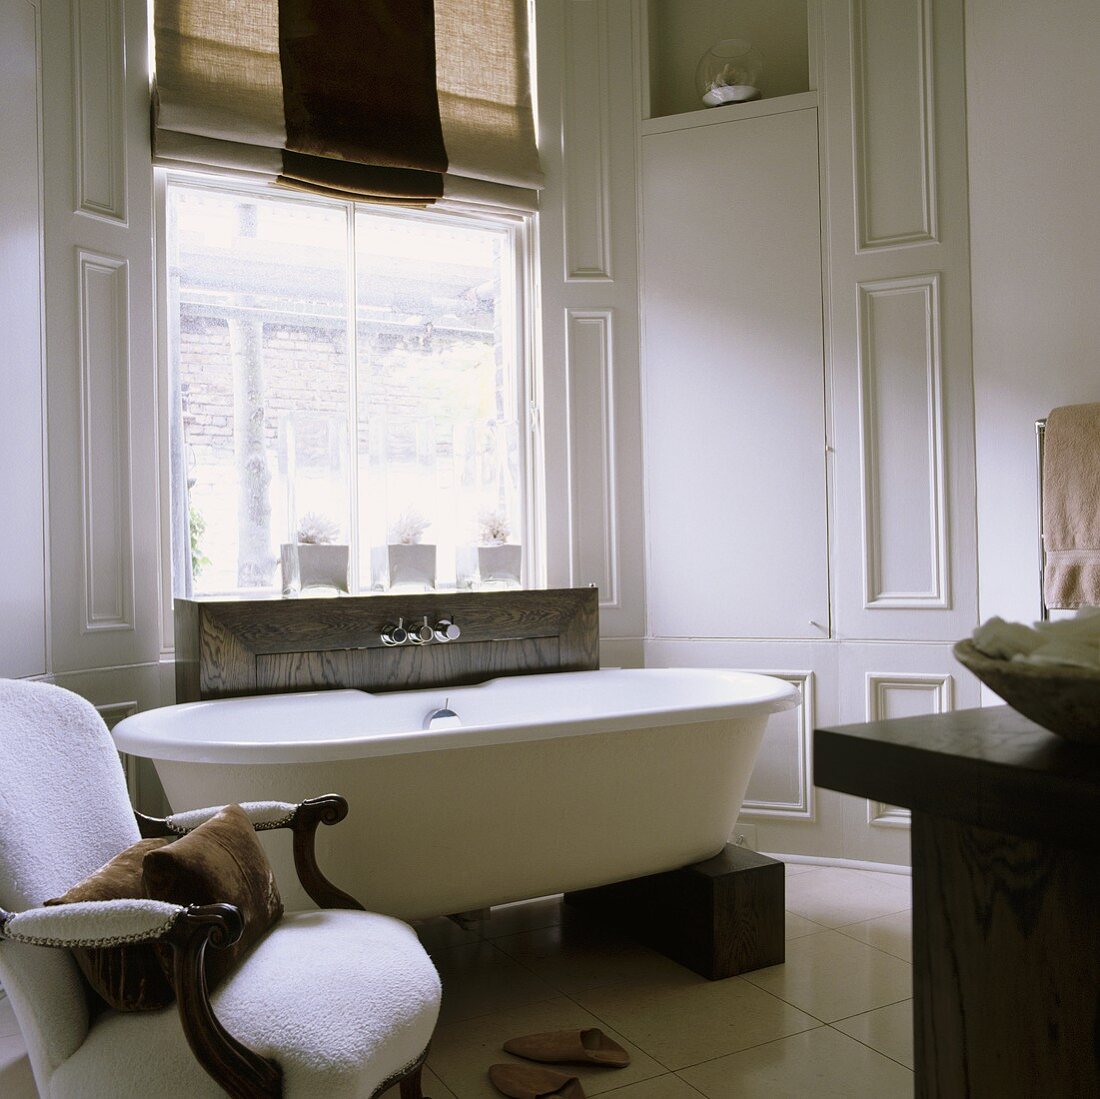 Freistehende Badewanne auf Holzklötzen und antiker weisser Sessel vor Fenster im hellgrau vertäfelten Bad